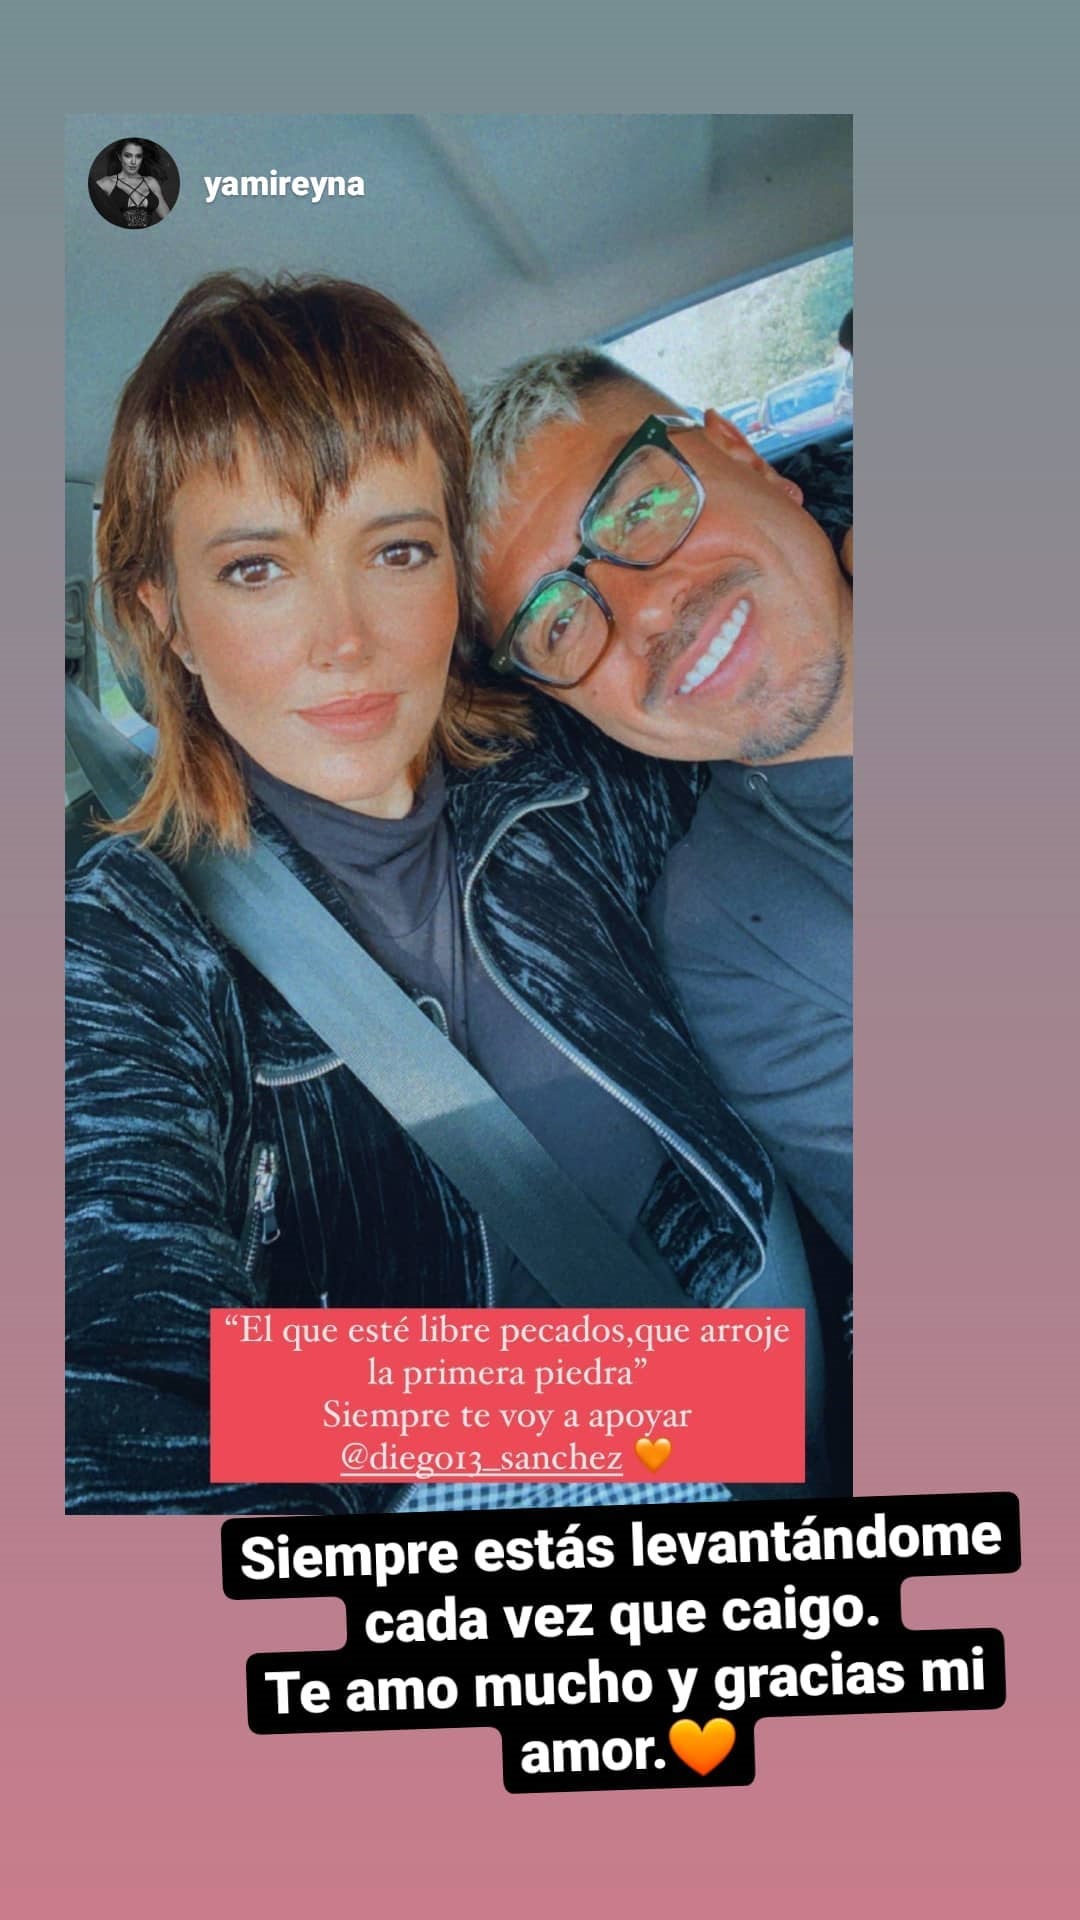 Yamila Reyna publicó mensaje defendiendo a Diego Sánchez tras ser detenido